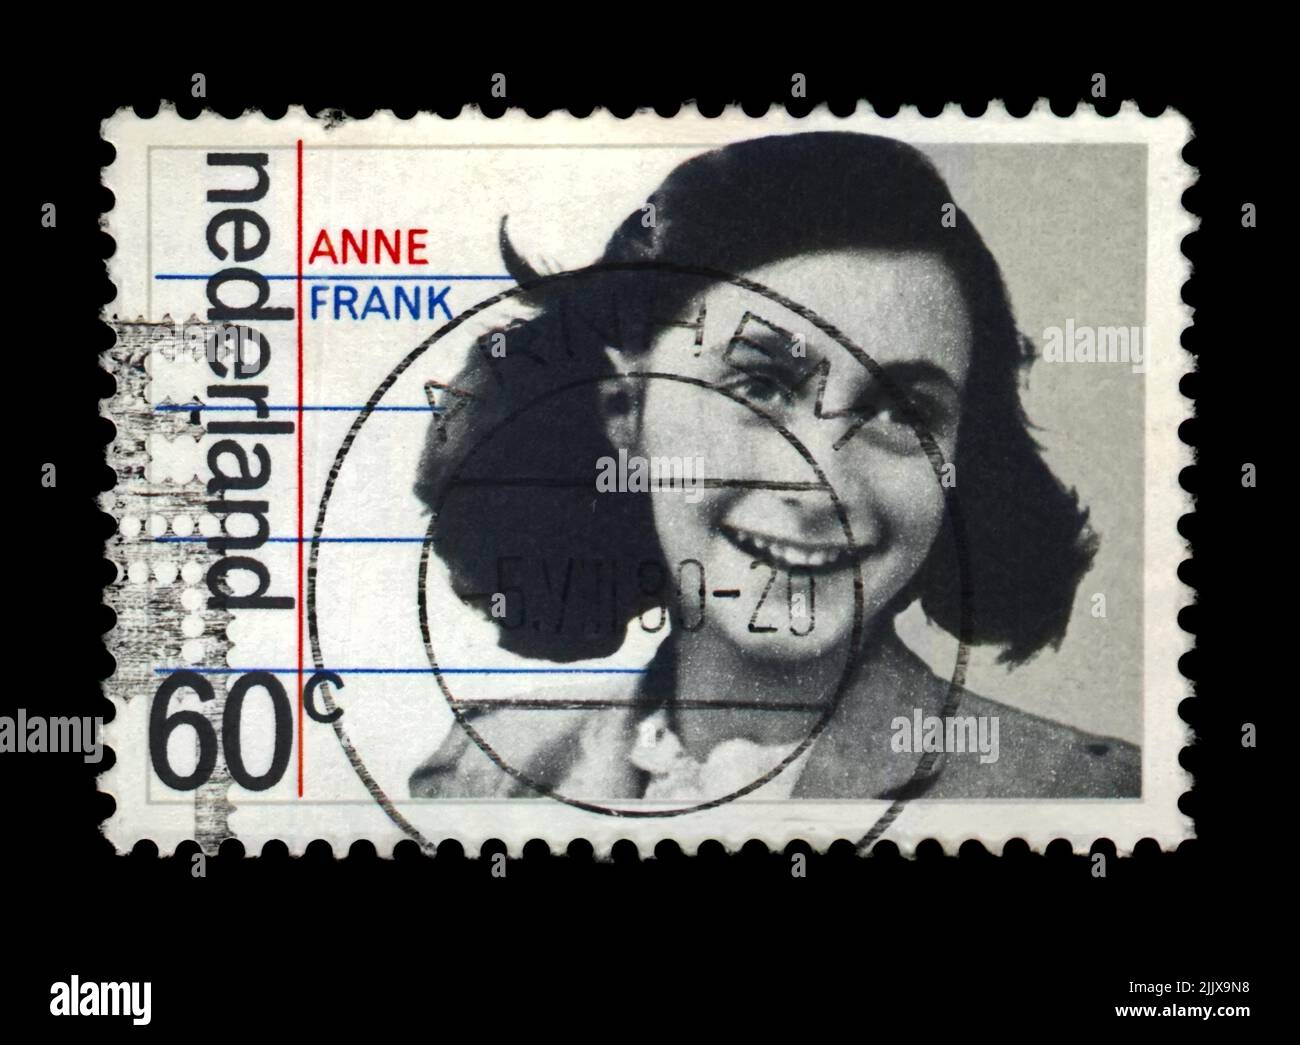 Fille juive Anne Frank(12 juin 1929–fév-mars 1945),35th anniversaire de la libération des Allemands, vers 1980.canceled timbre postal des pays-Bas. Banque D'Images